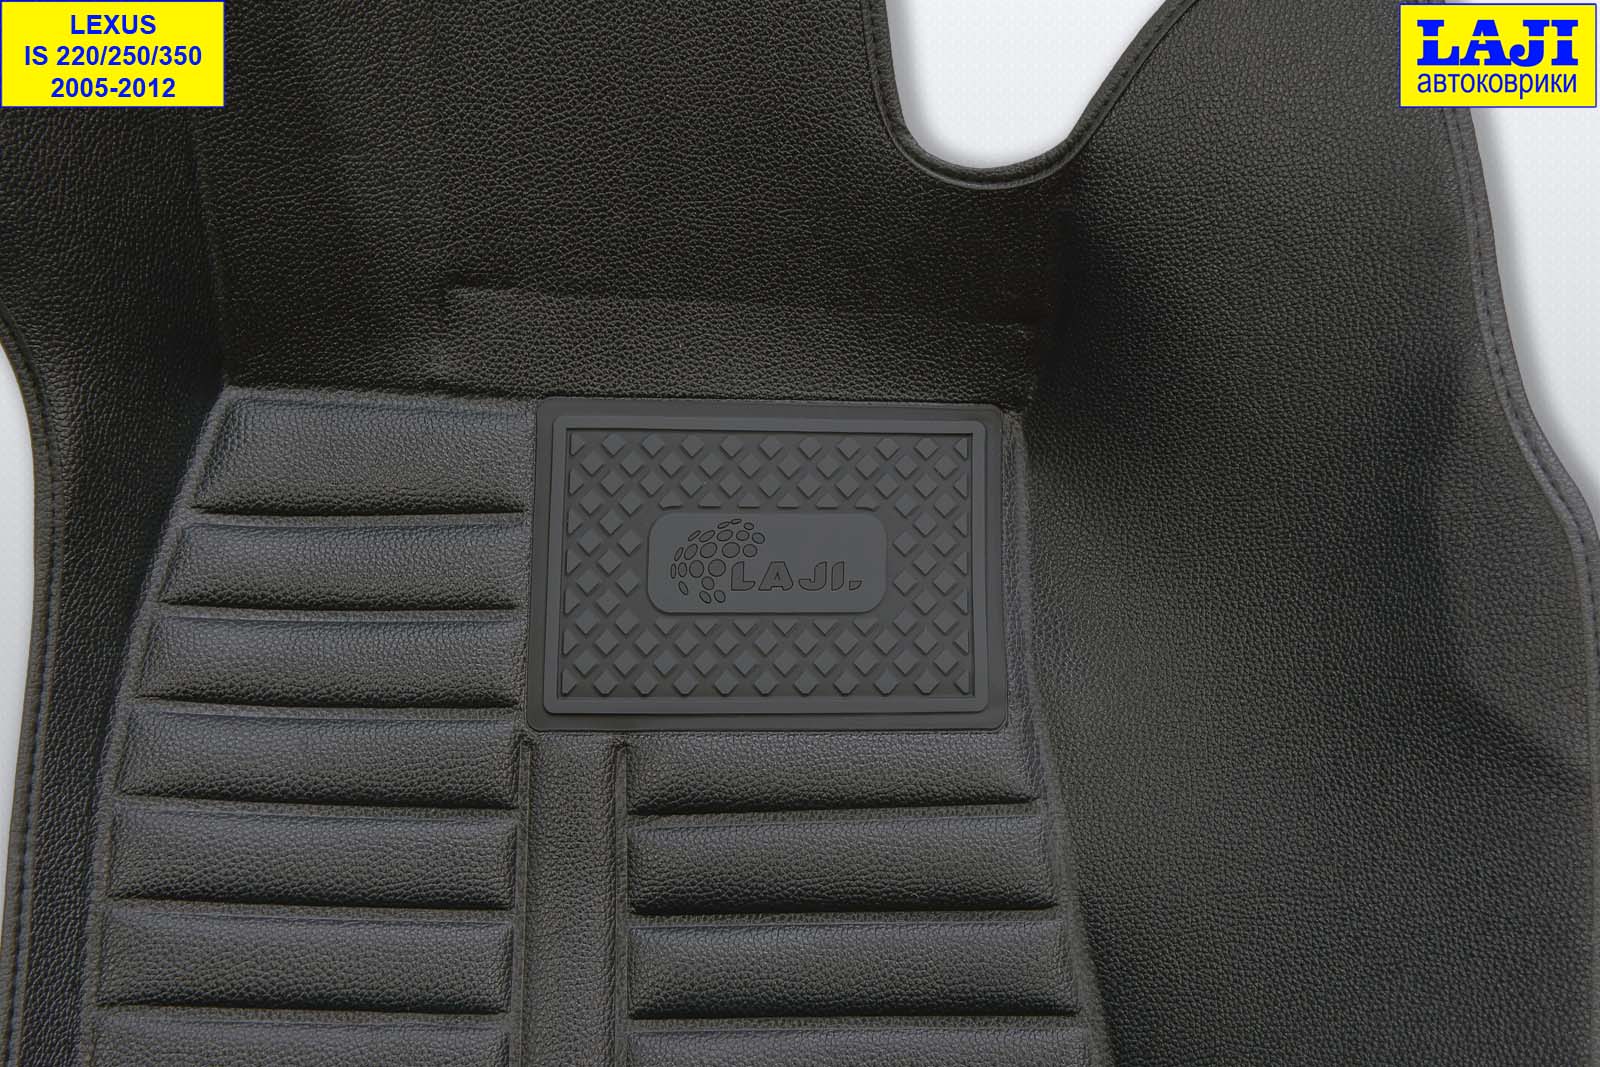 5D коврики в салон Lexus IS 3 2013-н.в. 7